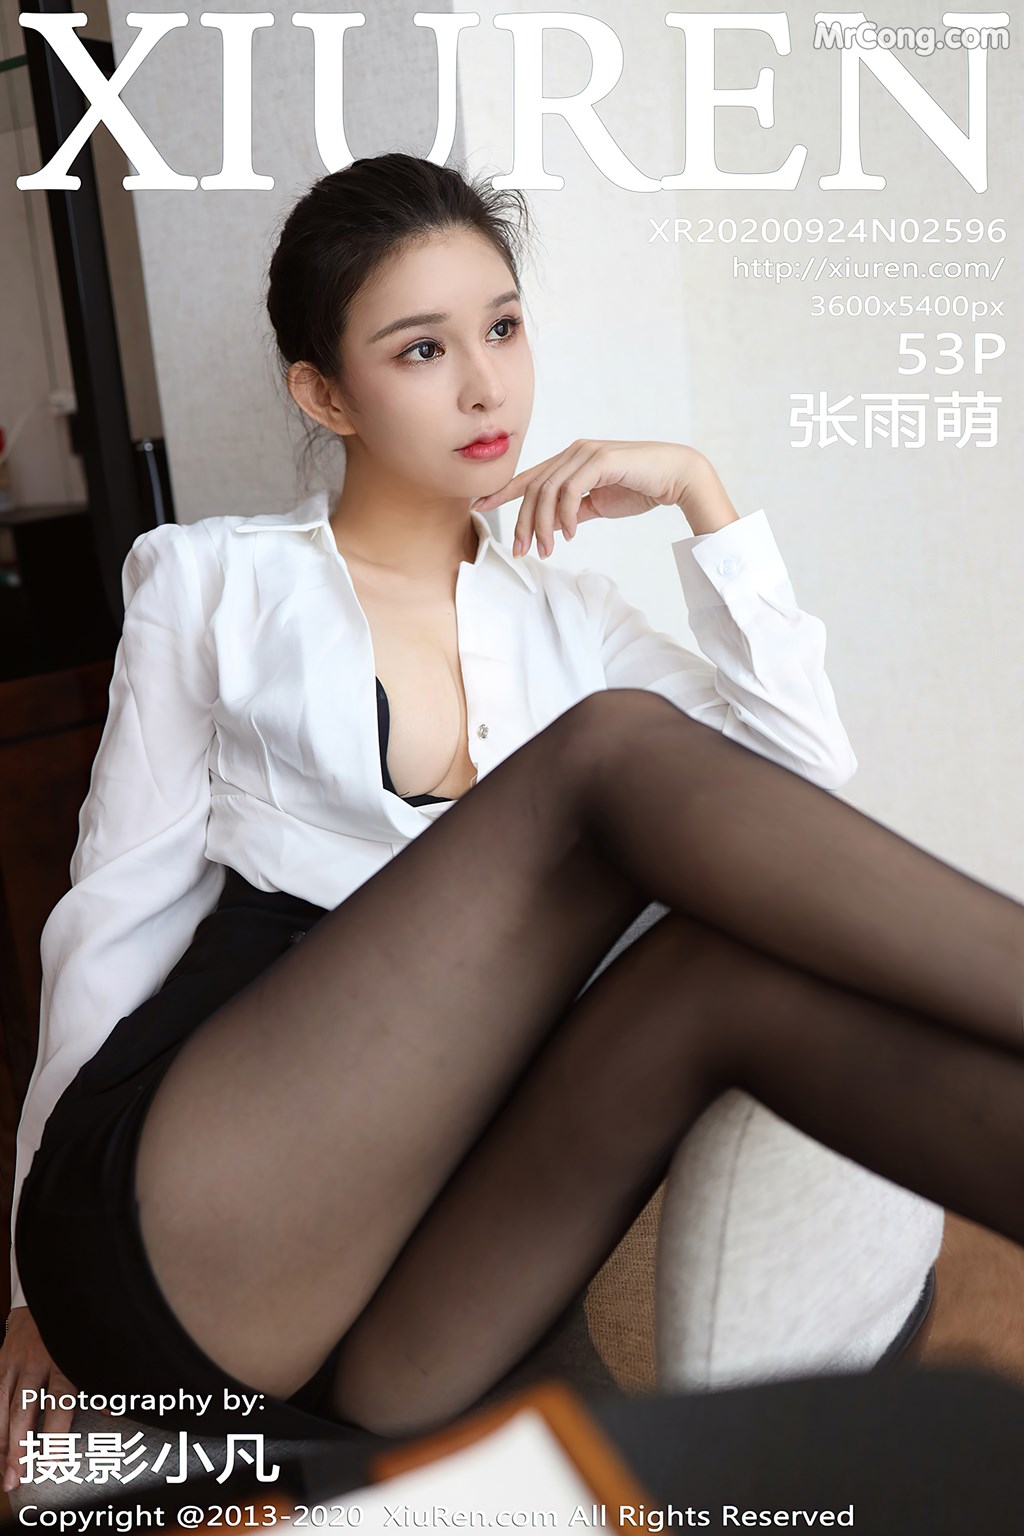 [XIUREN] No.2596 Zhang Yu Meng 张雨萌 Cover Photo